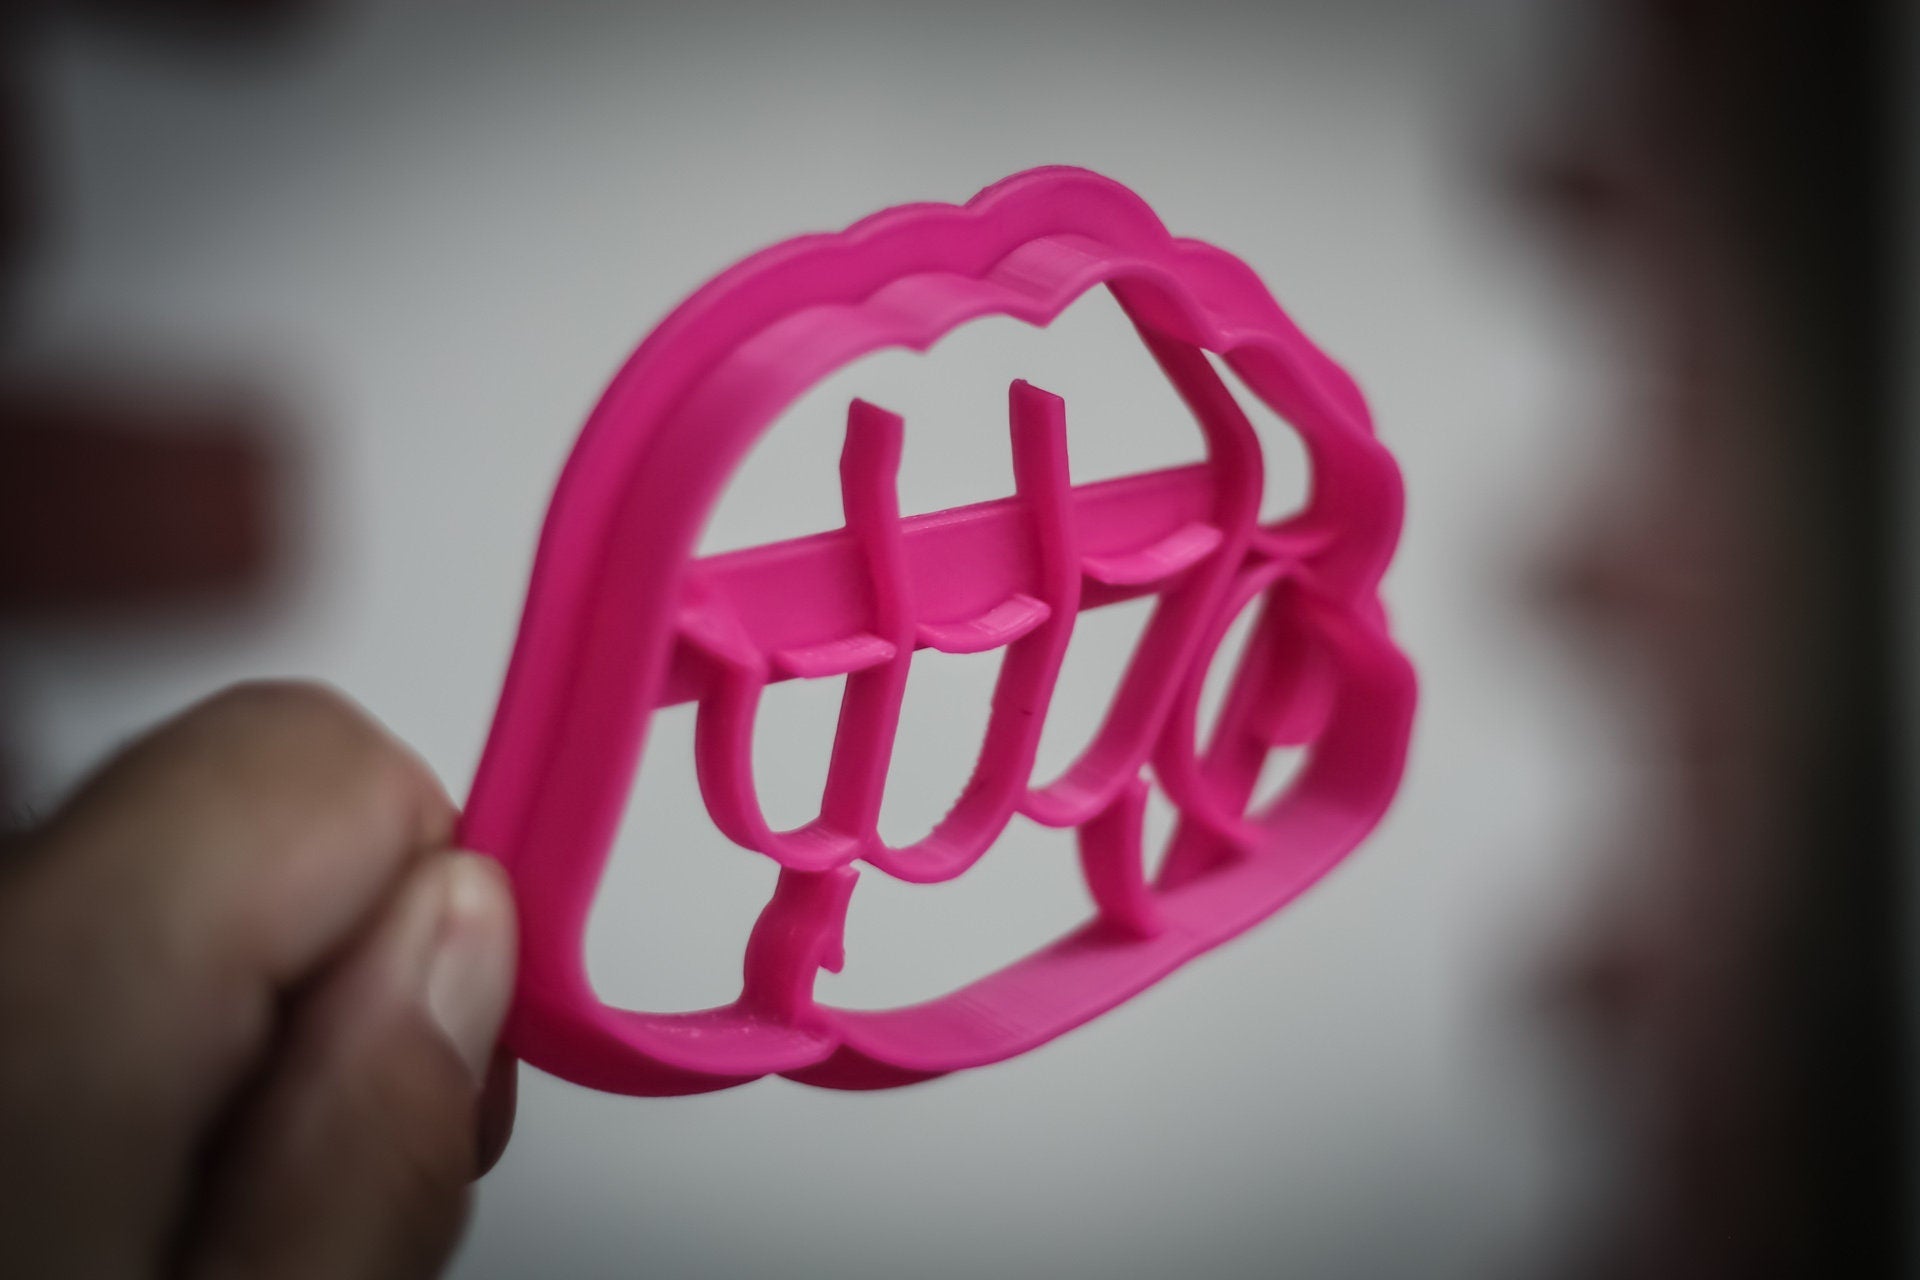 Fist Cookie Cutter | 3d Fun cookie cutters baking accessories | cookie mold baking supplies - 3DPrintProps